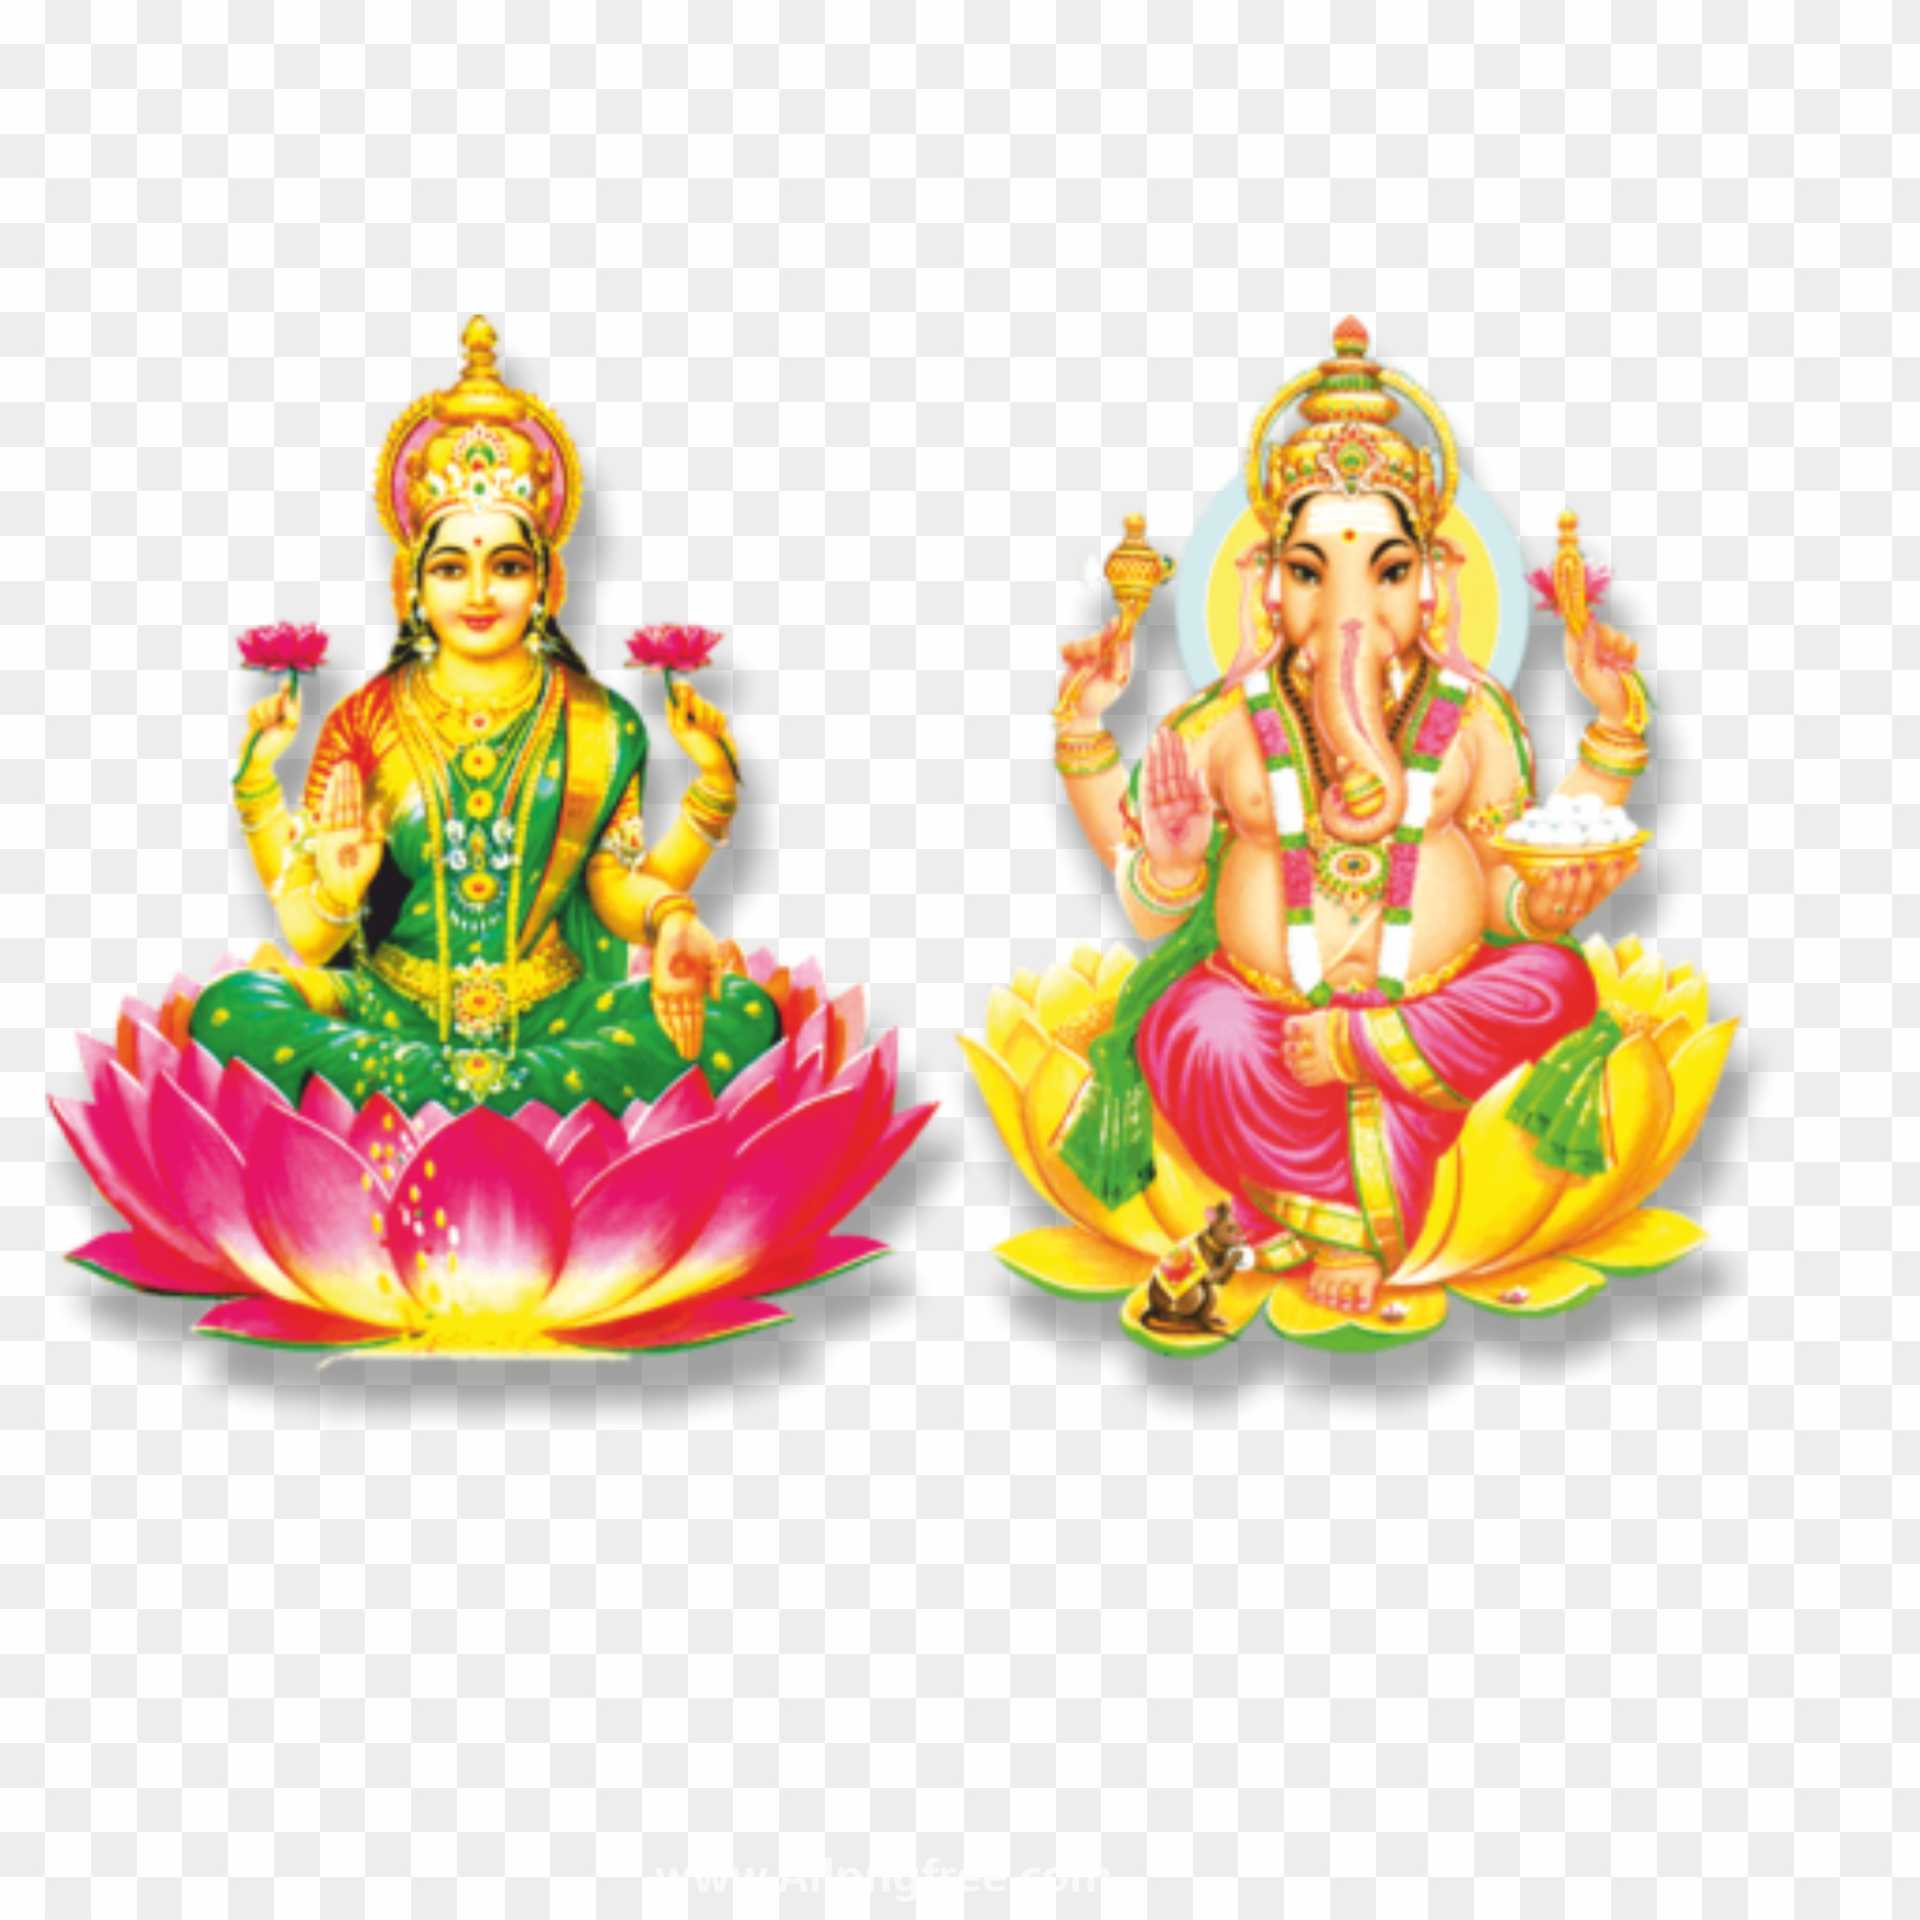 Lakshmi and Ganesh god Diwali PNG images